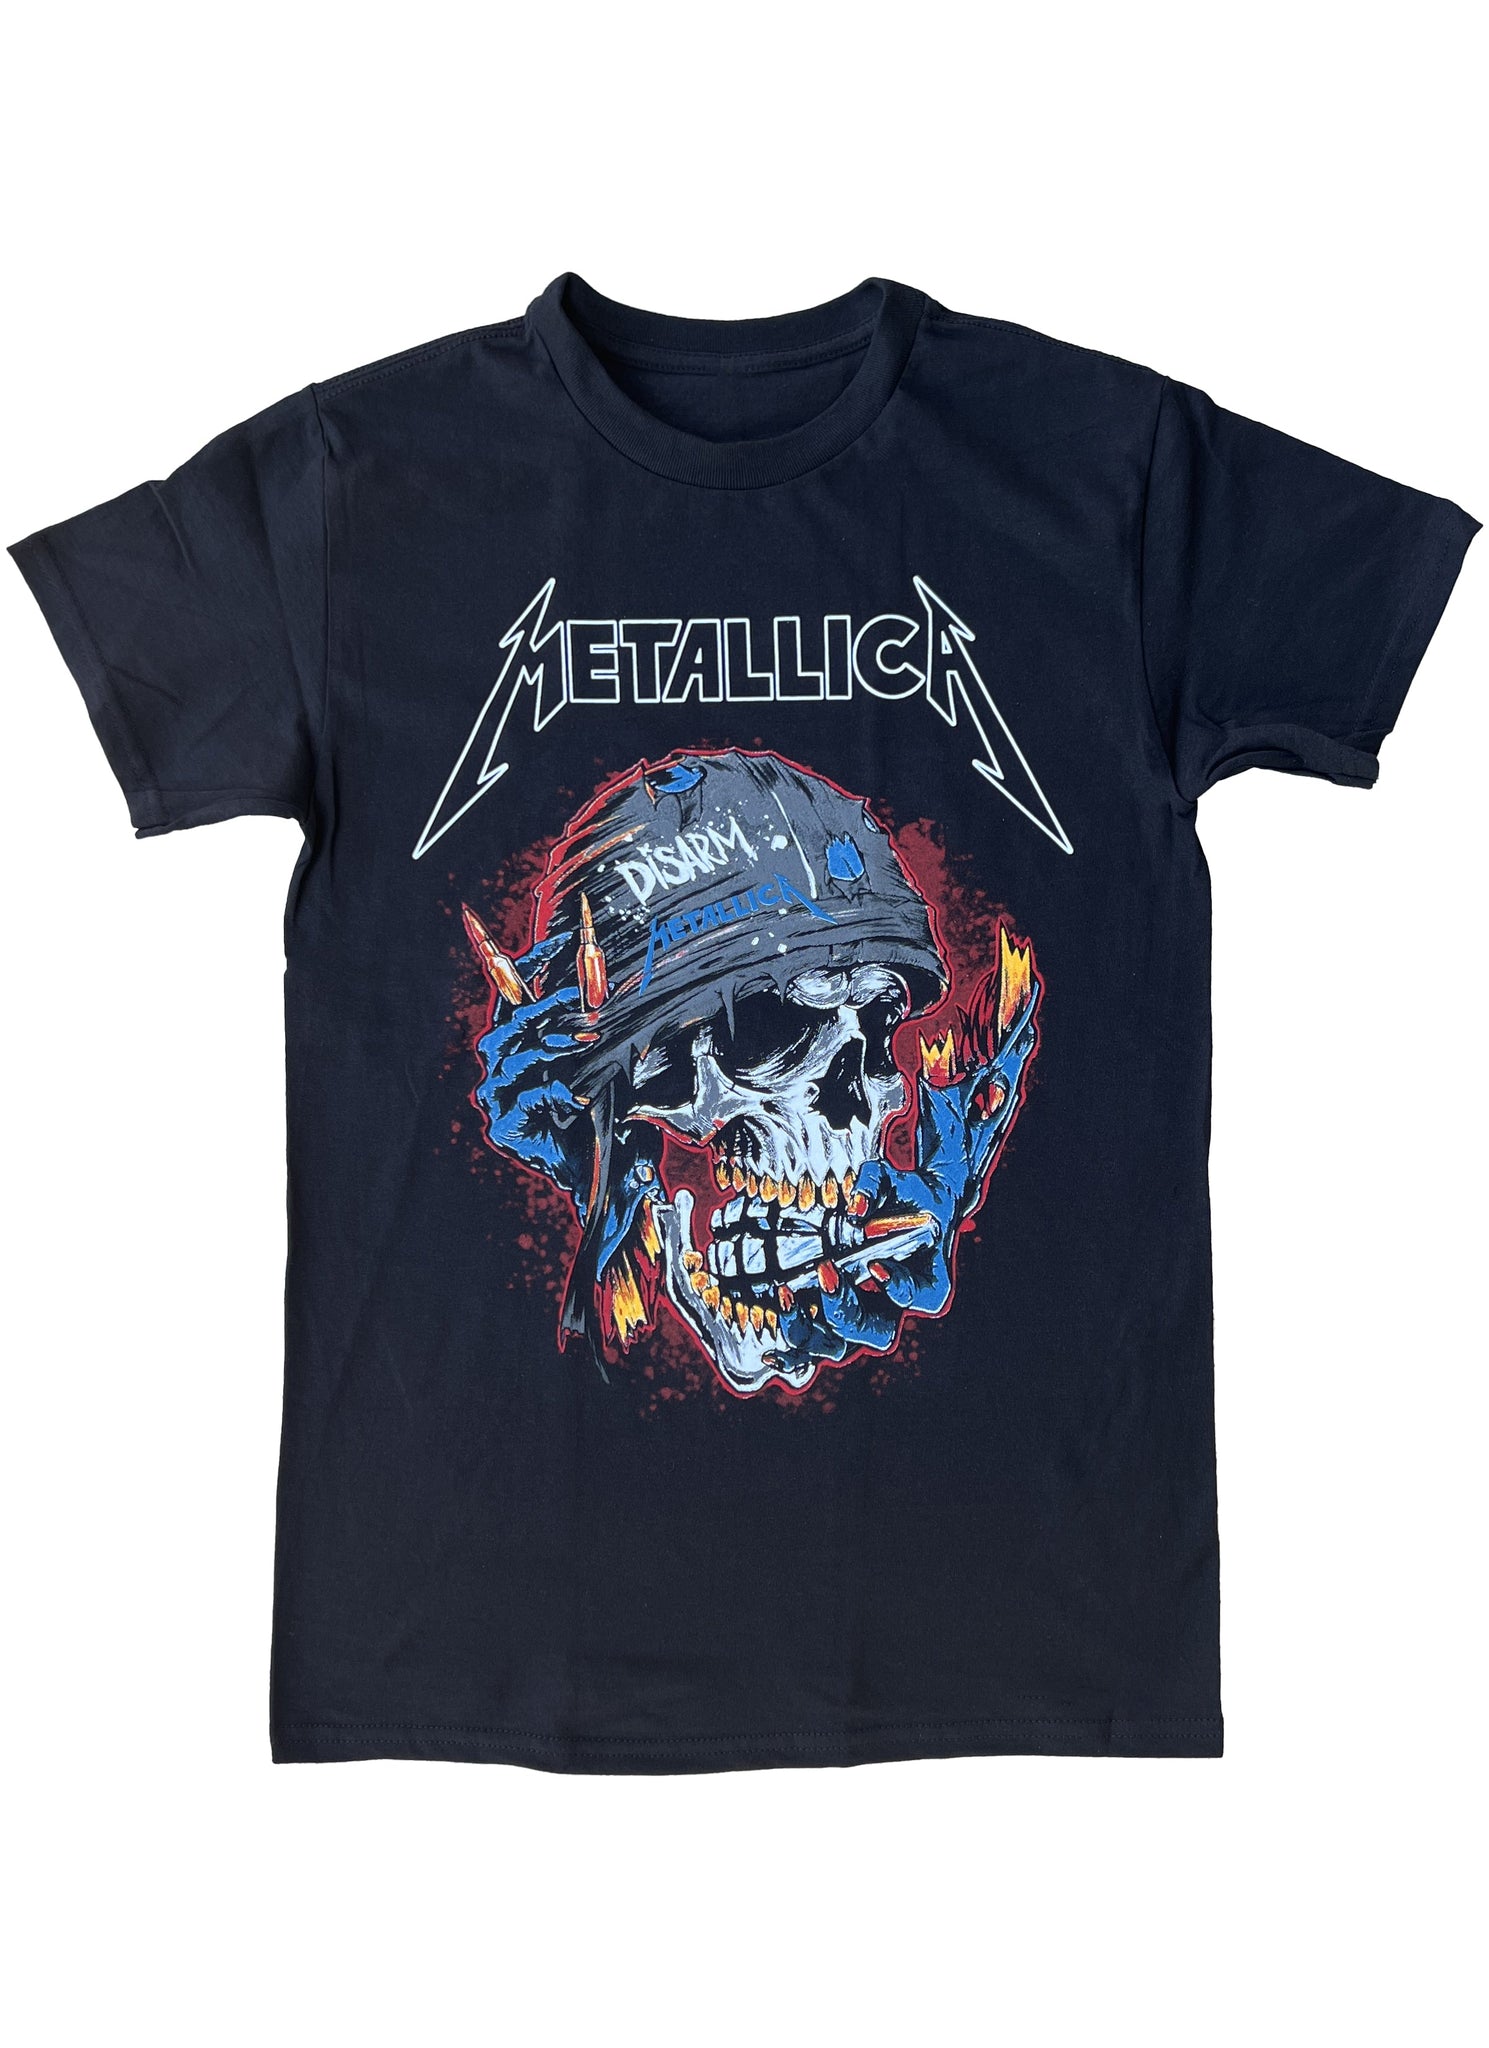 Metallica Skull Helmet Graphic Tee